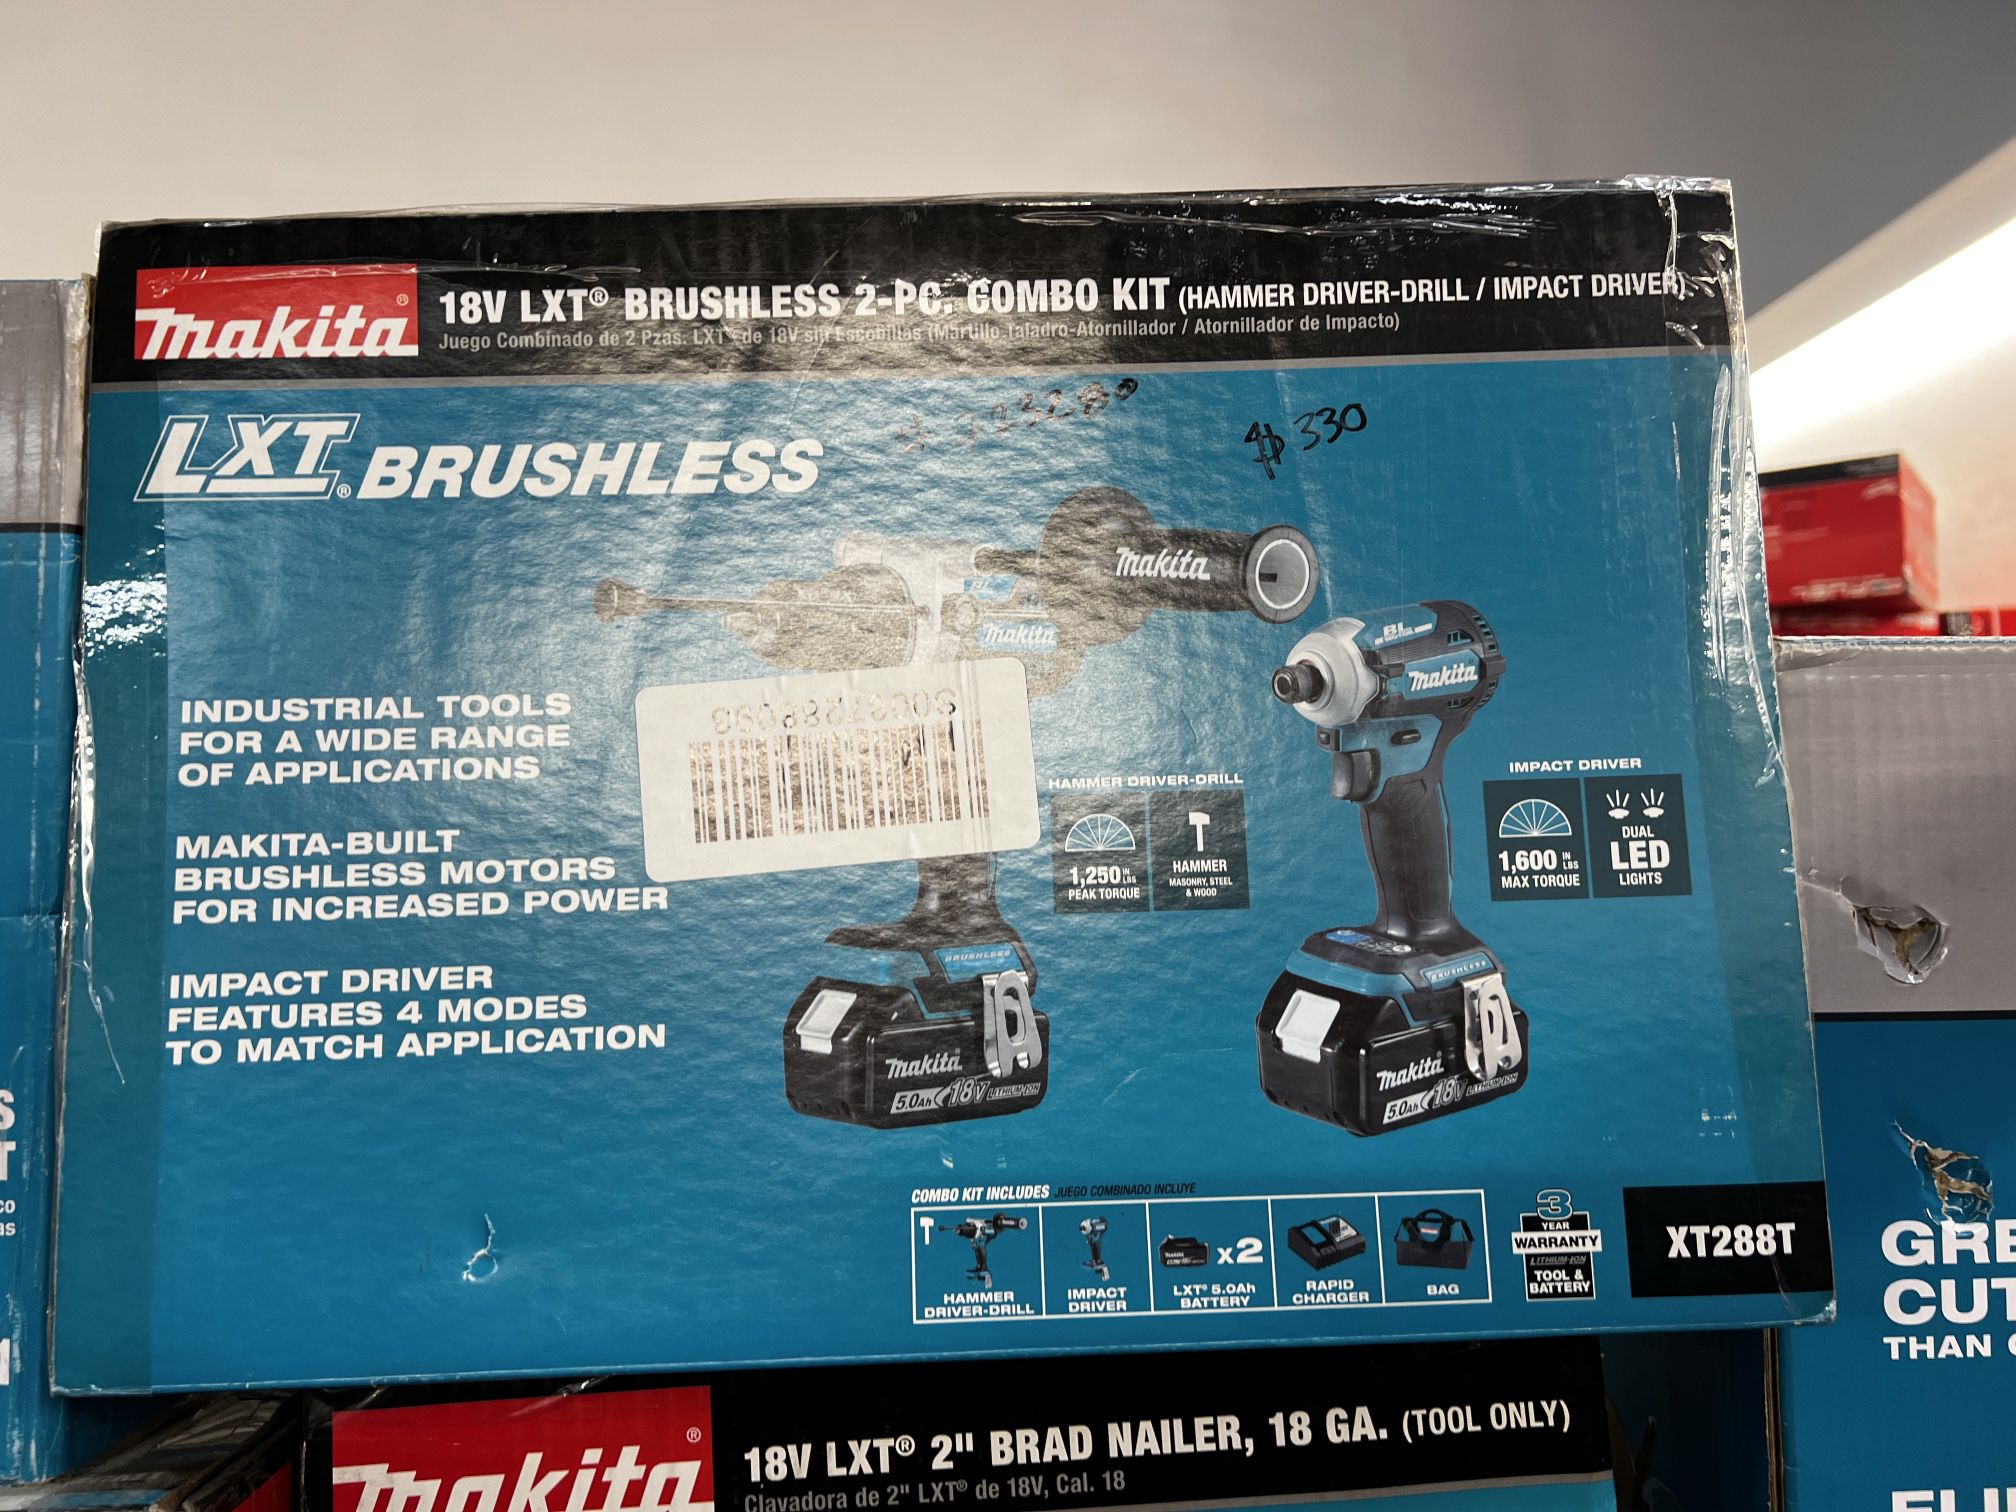 Makita 18v Lxt Brushless 2-pc Combo Kit (Hammer Drill-Driver/Impact Driver)